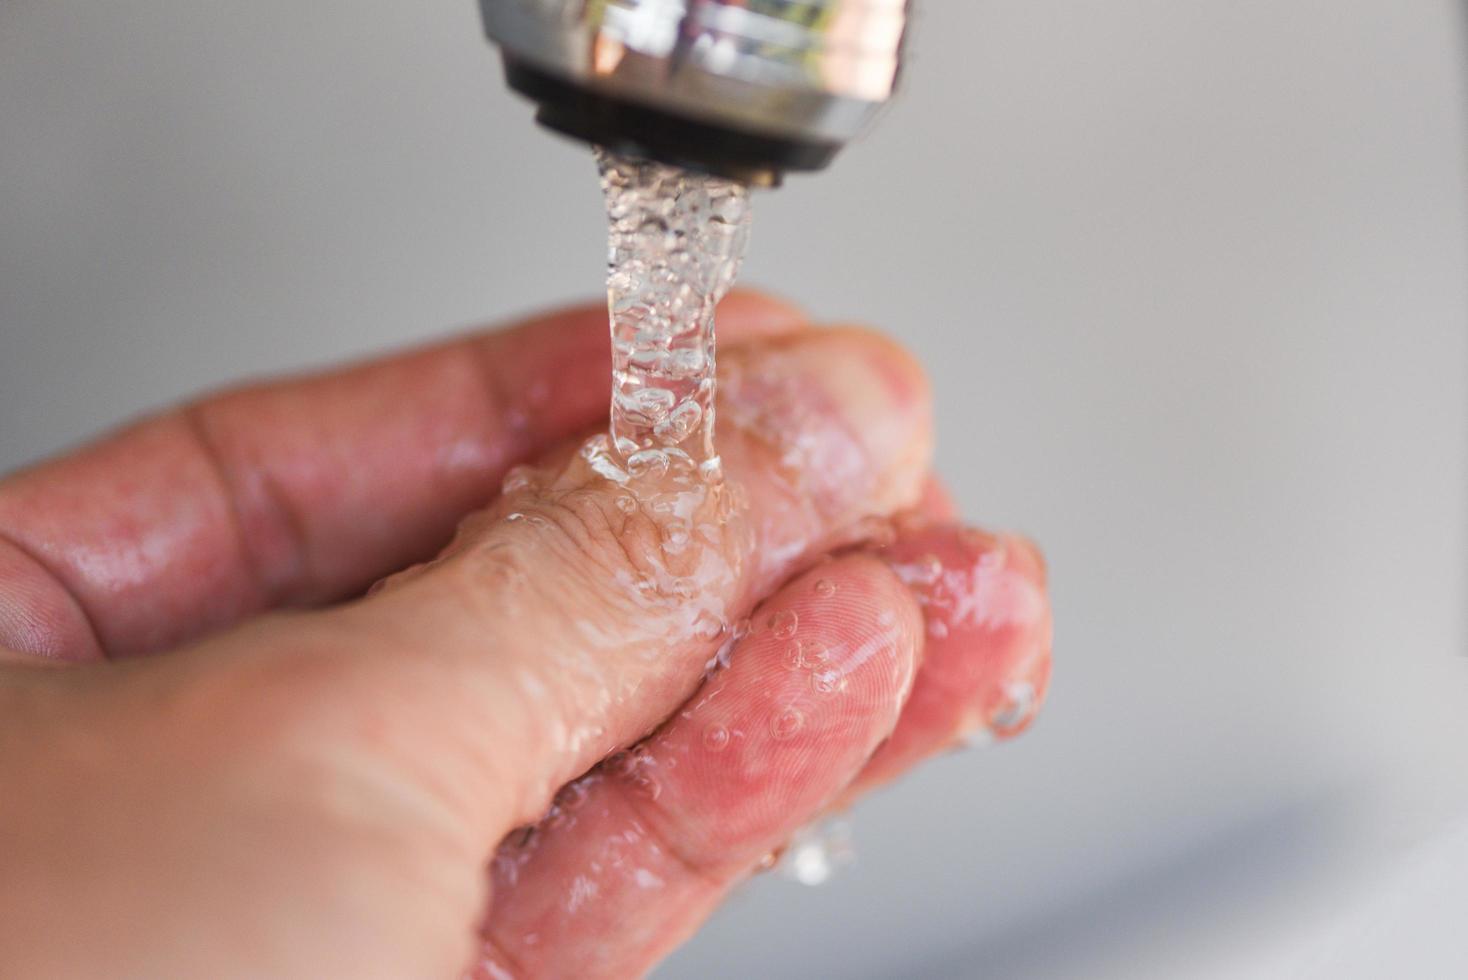 concetto di igiene dettaglio flusso d'acqua in bagno - lavarsi le mani sotto il rubinetto dell'acqua o il rubinetto foto